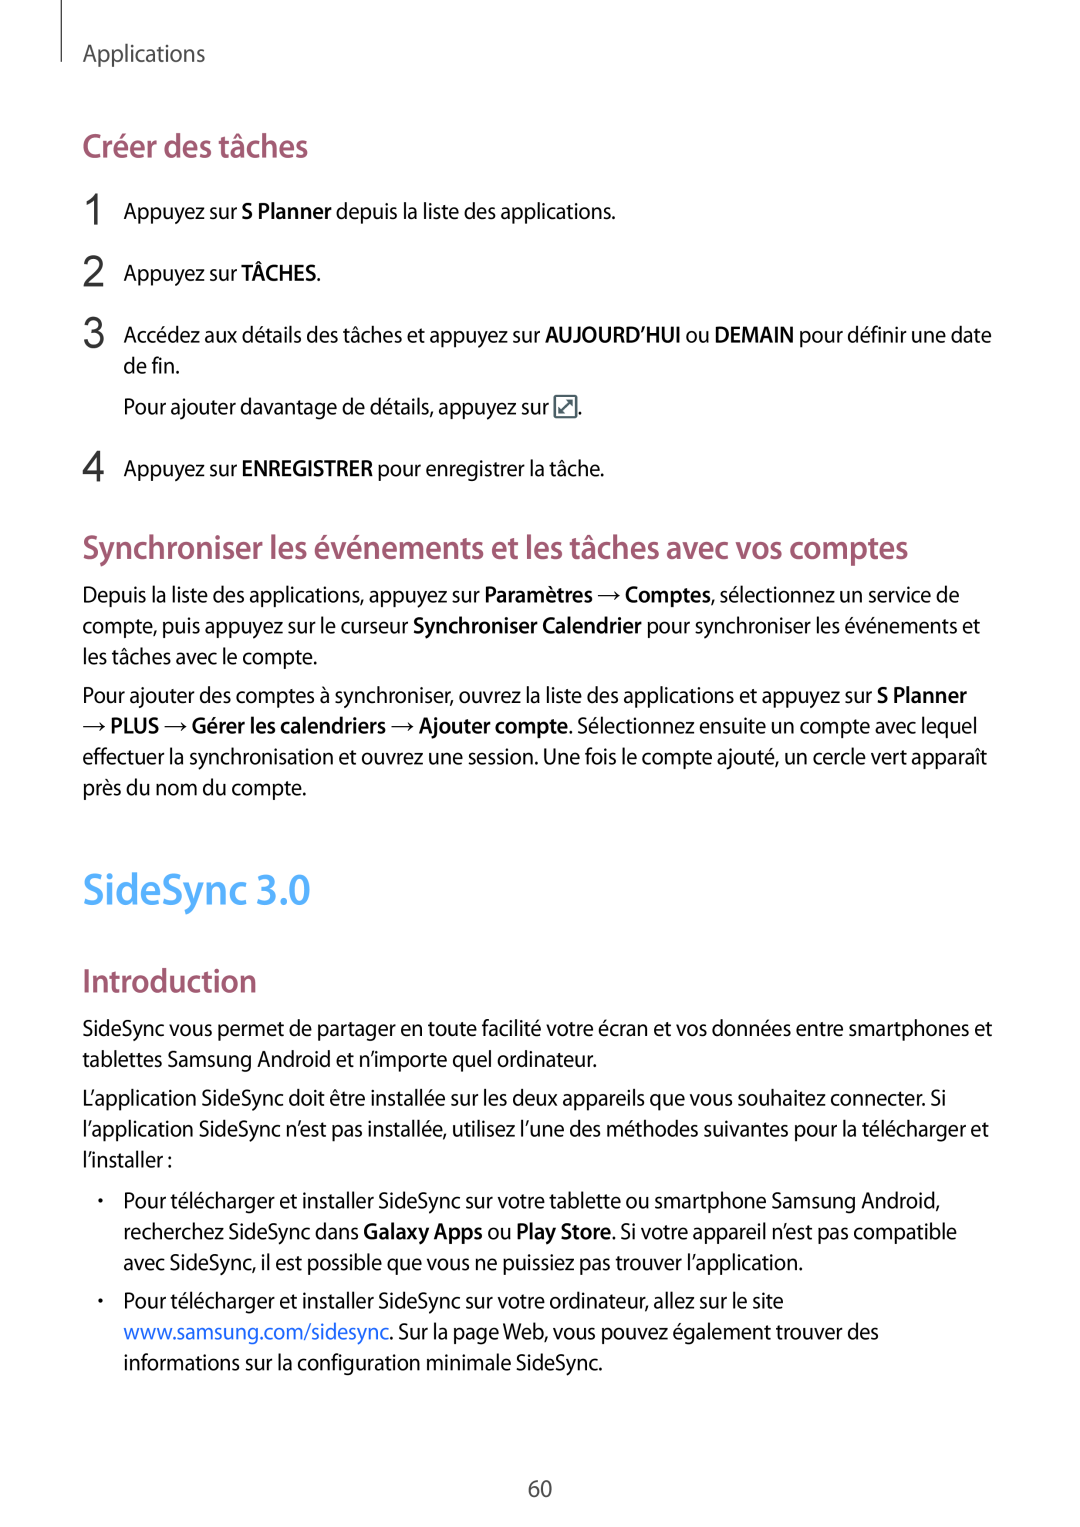 Samsung SM-T810NZDEXEF manual SideSync, Créer des tâches, Synchroniser les événements et les tâches avec vos comptes 